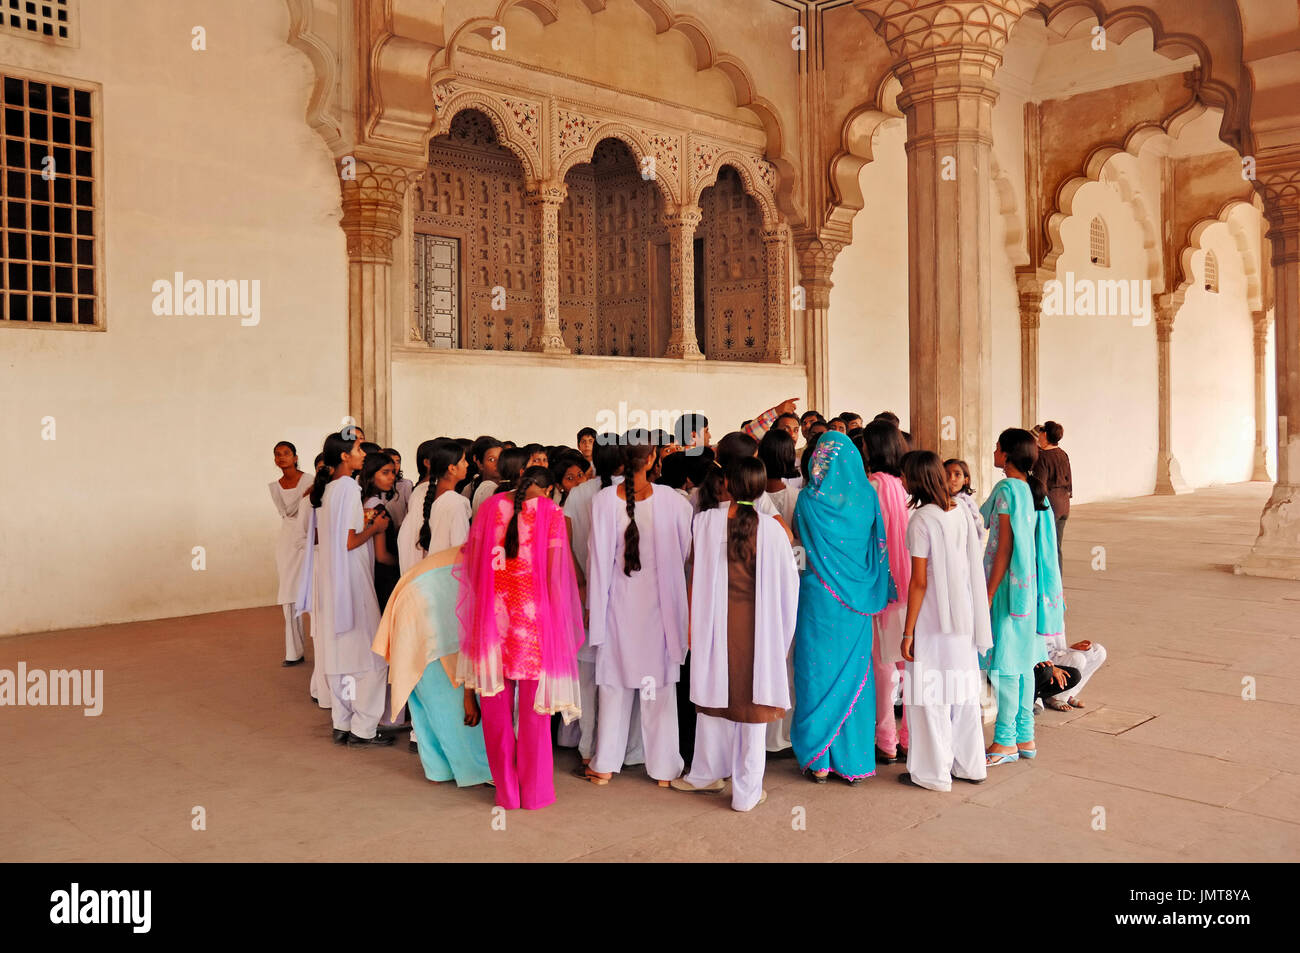 Muchachas indias, Fuerte Rojo, Agra, Uttar Pradesh, India | Indische Maedchen, Rotes Fort, Agra, Uttar Pradesh, Indien Foto de stock